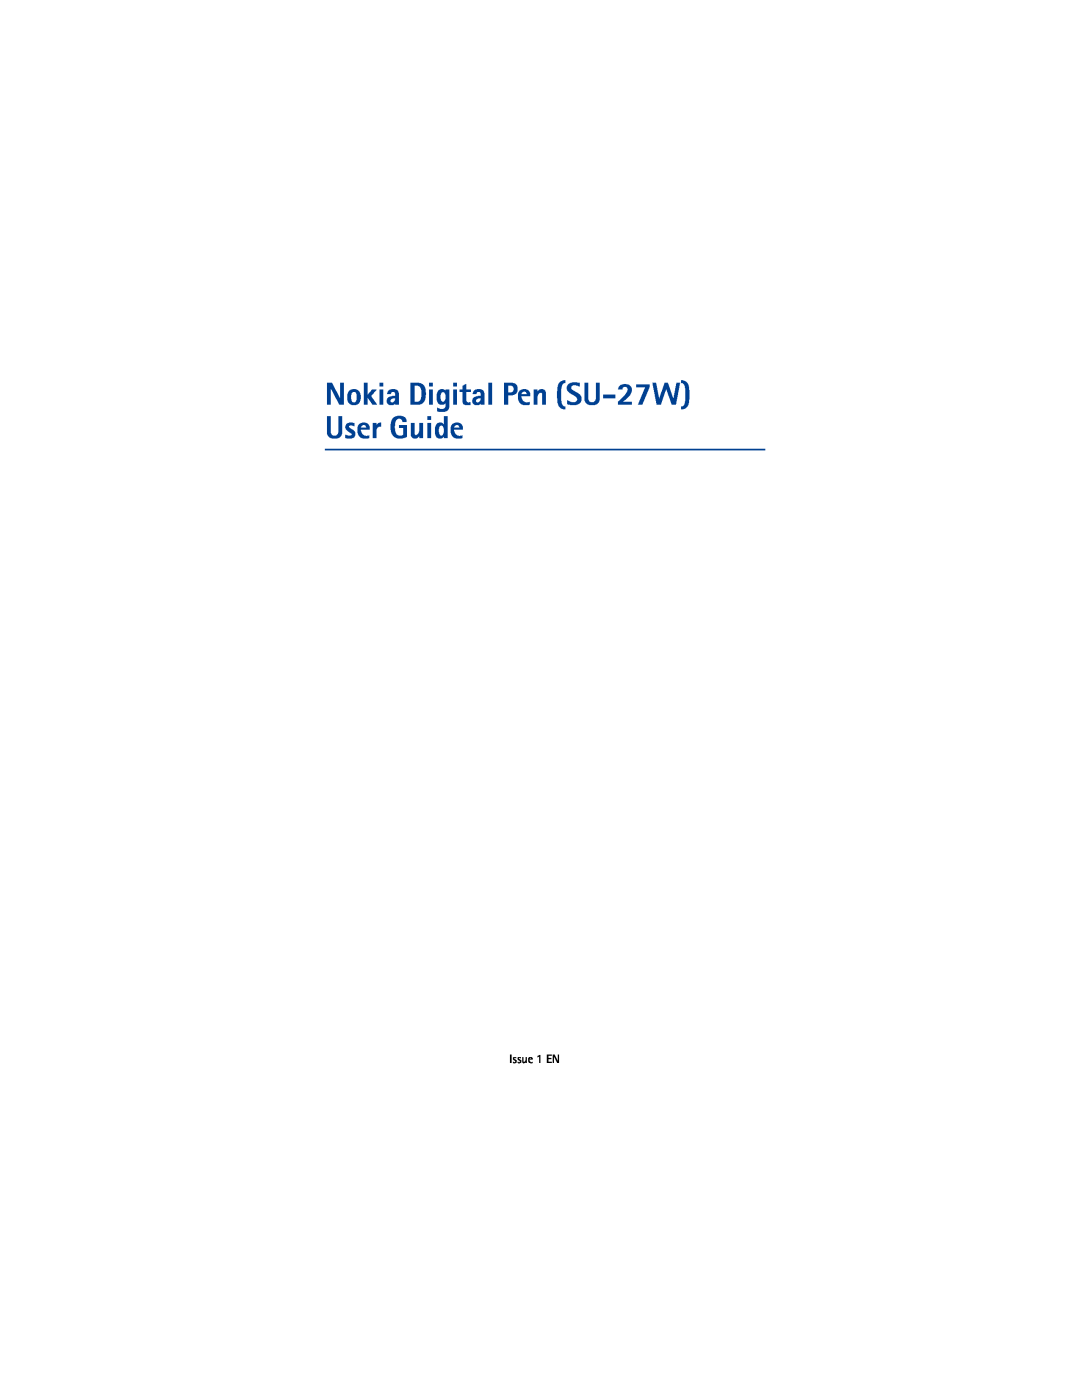 Nikon manual Nokia Digital Pen SU-27W User Guide, Issue 1 EN 